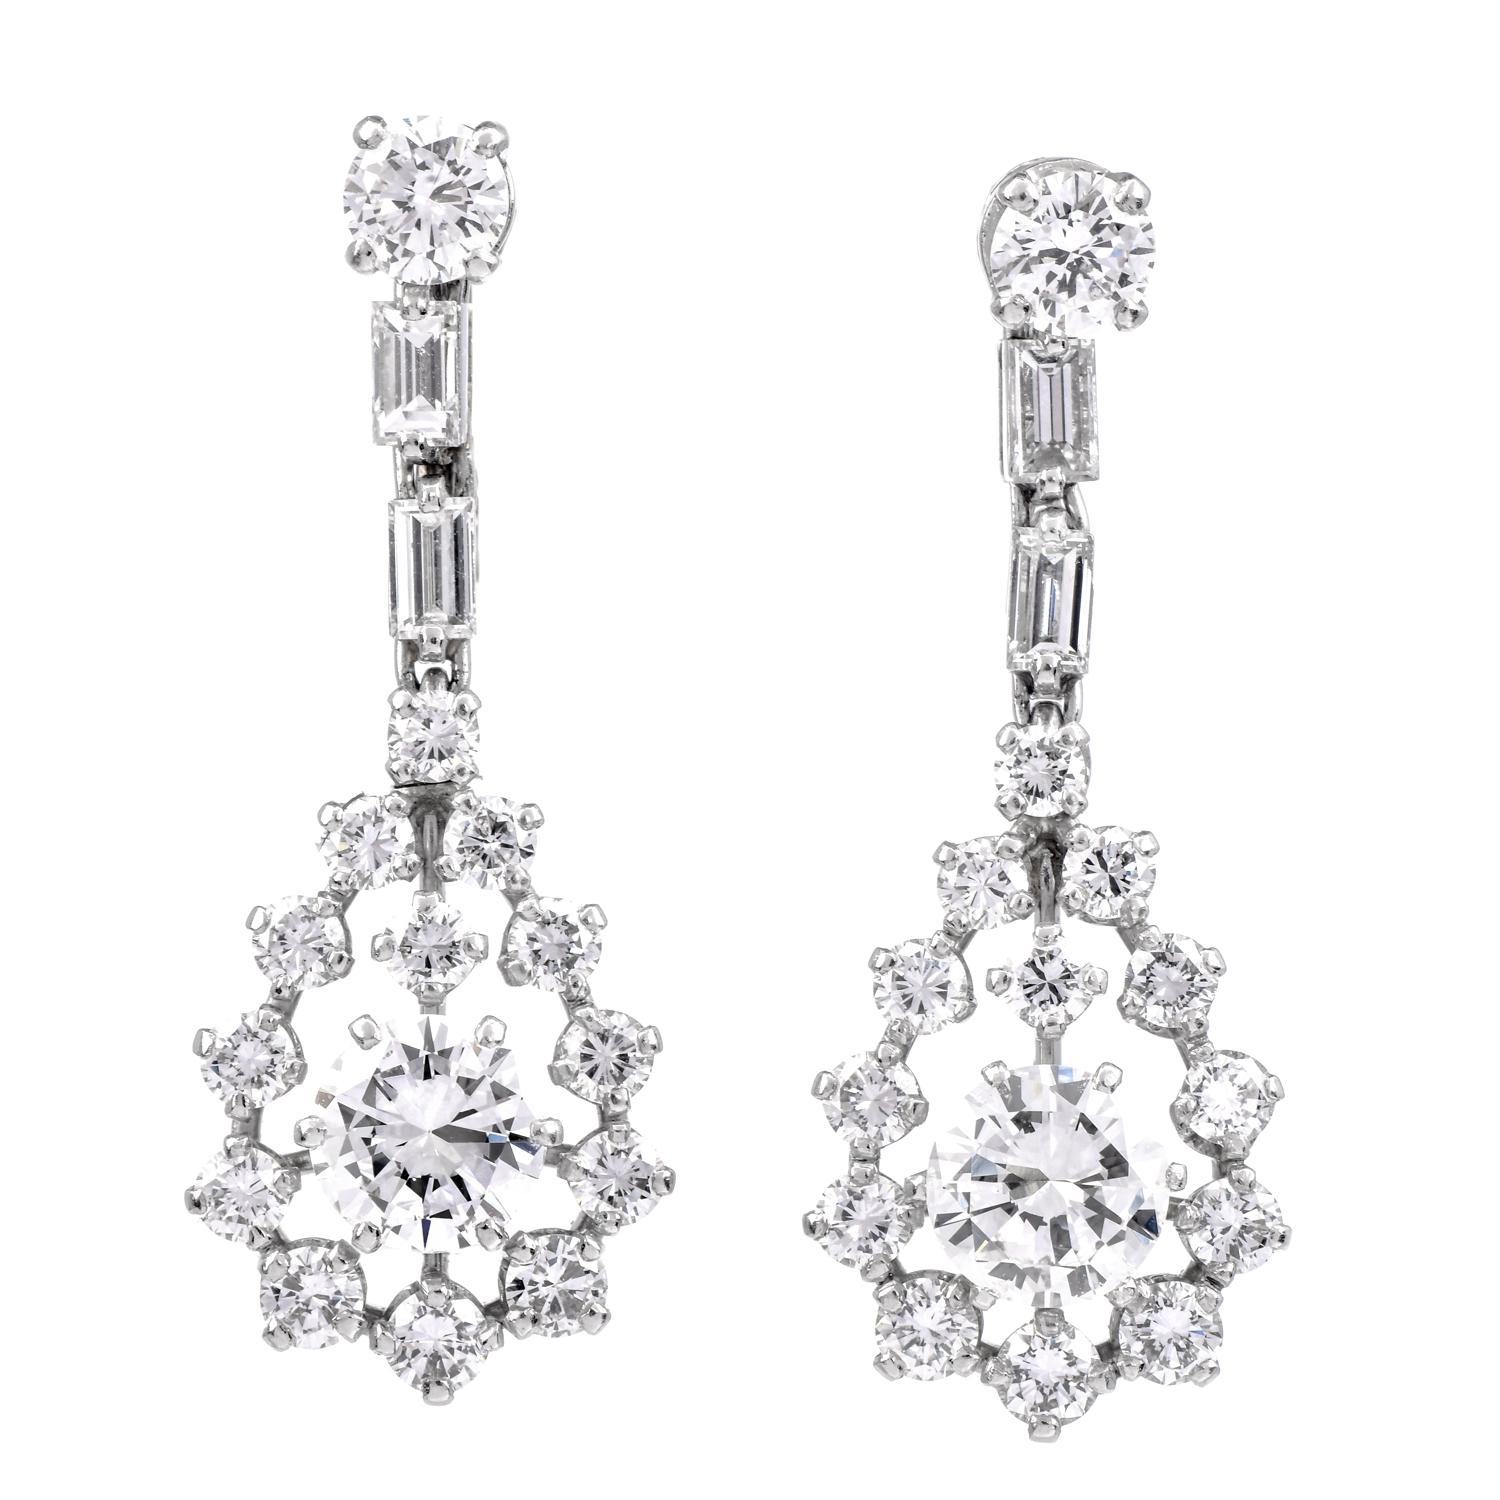 Wir präsentieren ein schönes Paar Platin-Diamant-Ohrringe. Tropfenförmige Ohrringe, besetzt mit 34 runden Brillanten und Baguette-Diamanten. Die beiden Diamanten in der Mitte haben insgesamt 2,10 Karat. Die umliegenden Diamanten haben zwischen 0,09